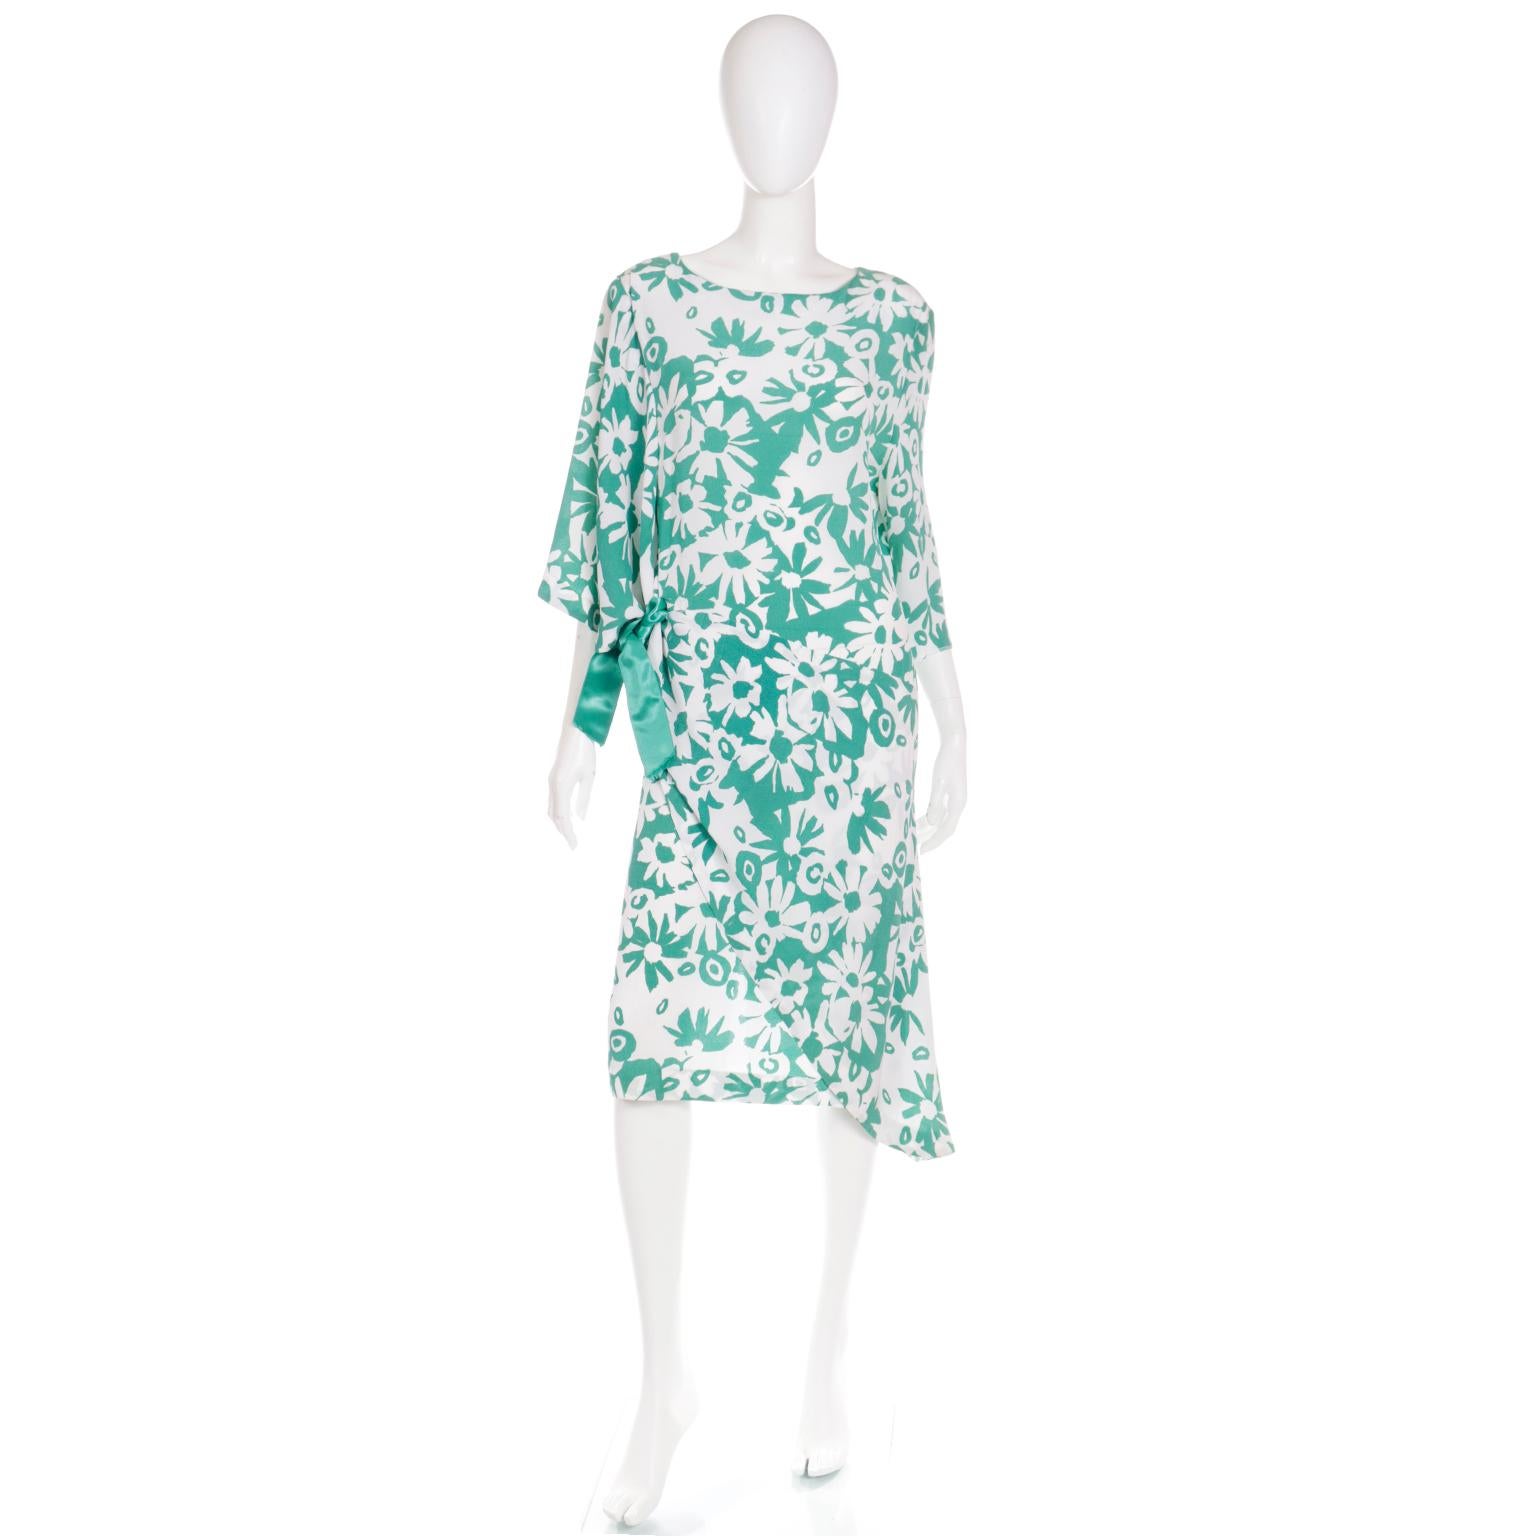 Dieses hübsche Vintage-Kleid von Creation Pierre Cardin Paris hat einen auffälligen grün-weißen Blumendruck und ist mit unglaublichen Stildetails versehen. Dieses von den 1920er Jahren inspirierte Tages- oder Abendkleid hat eine asymmetrische